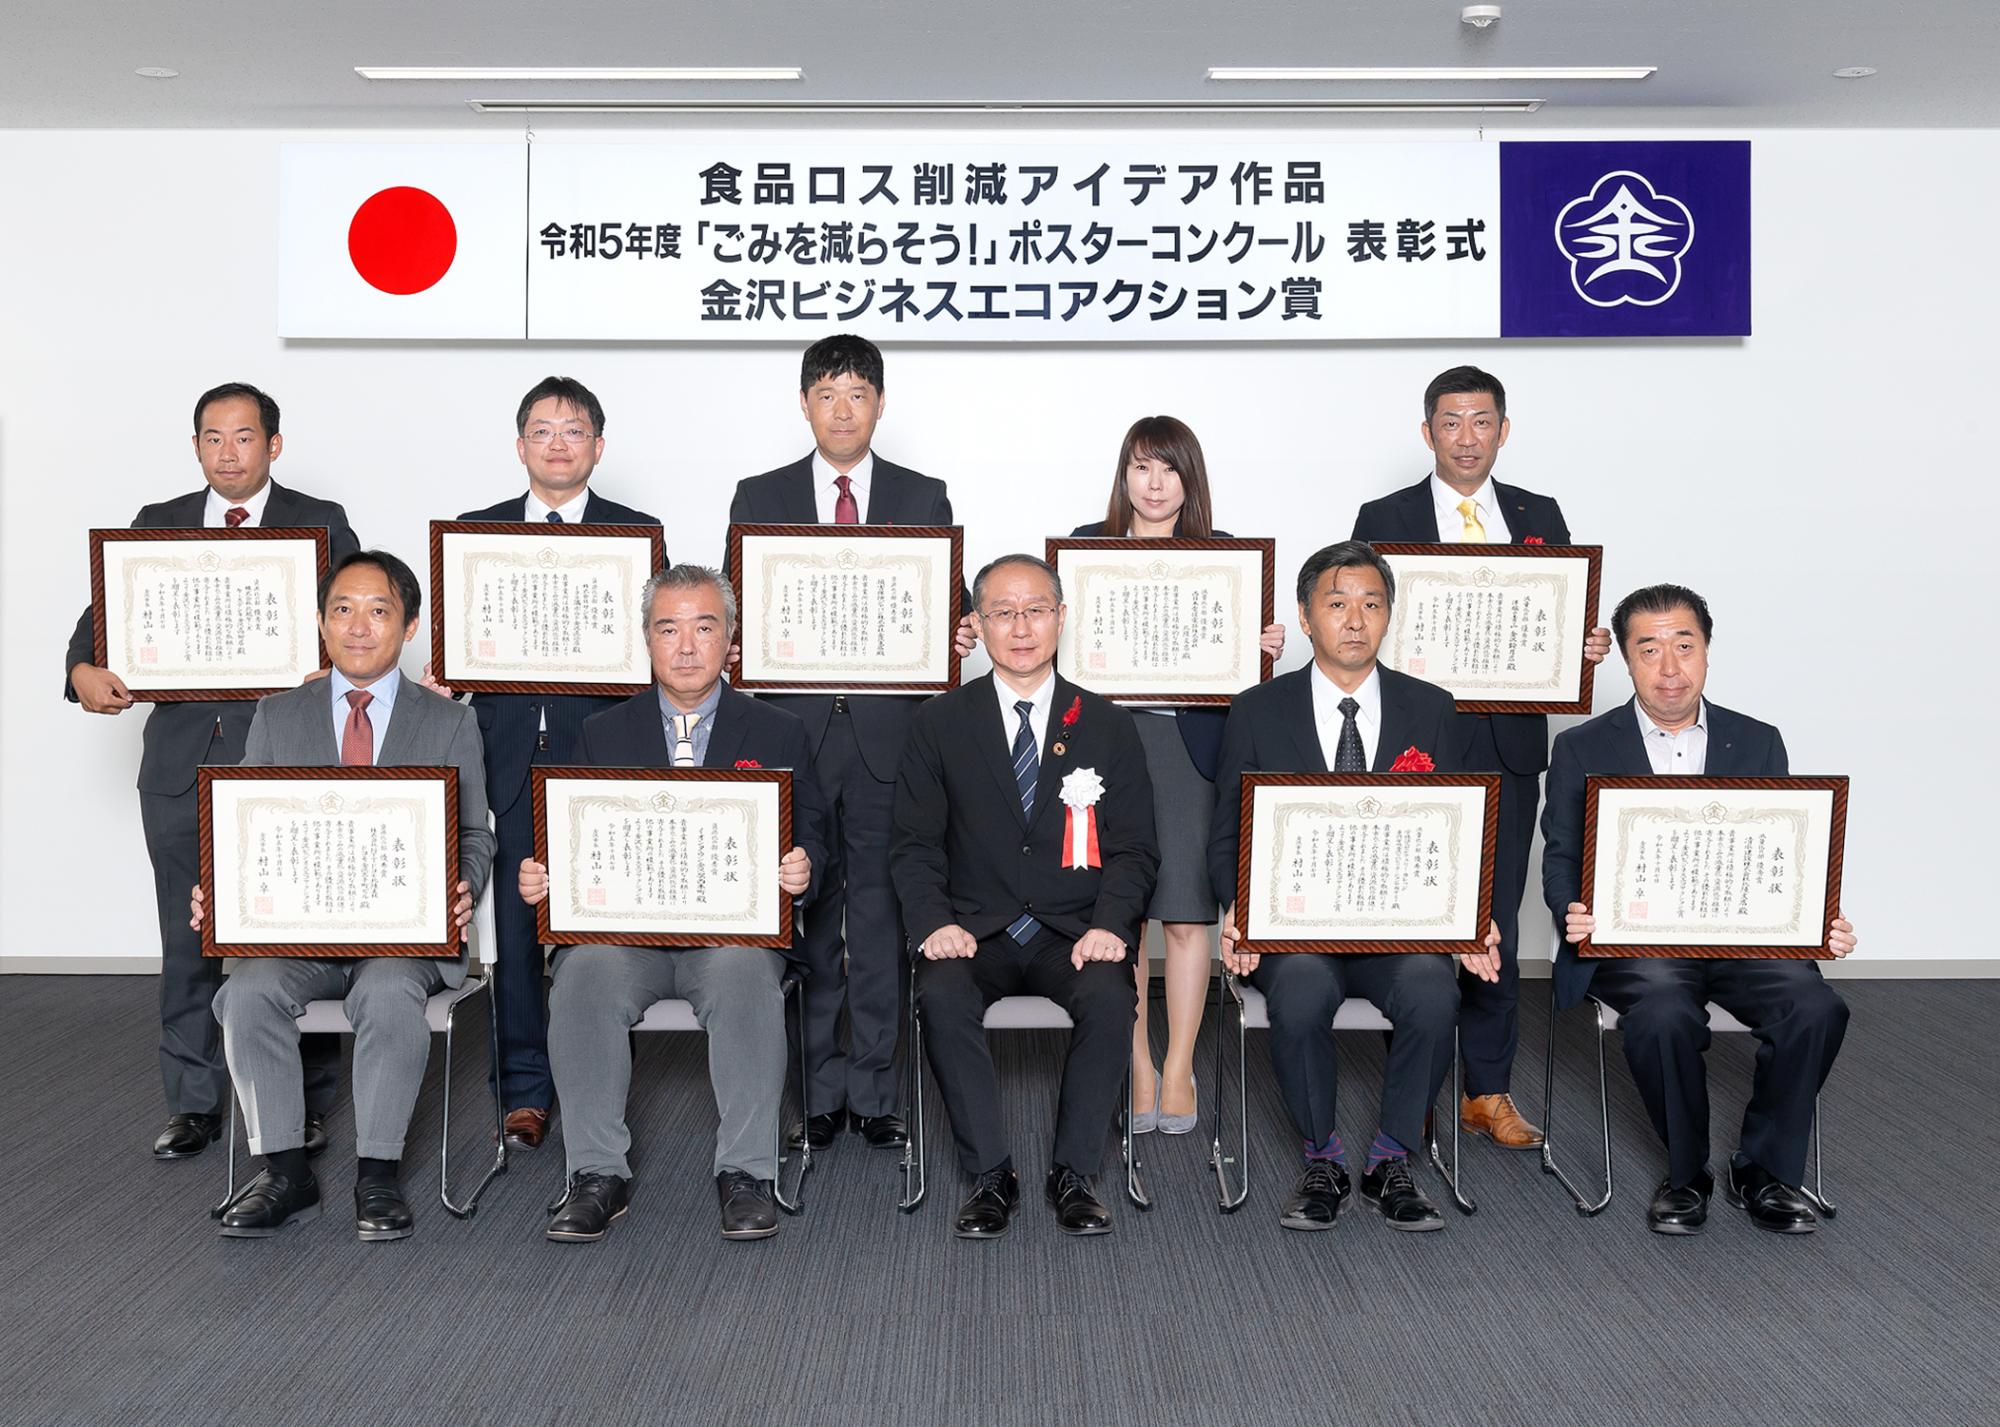 「令和3年度金沢ビジネスエコアクション賞表彰式」と書かれた横断幕の前で、額に入った賞状を持った受賞者10名と市長が記念撮影をしている写真